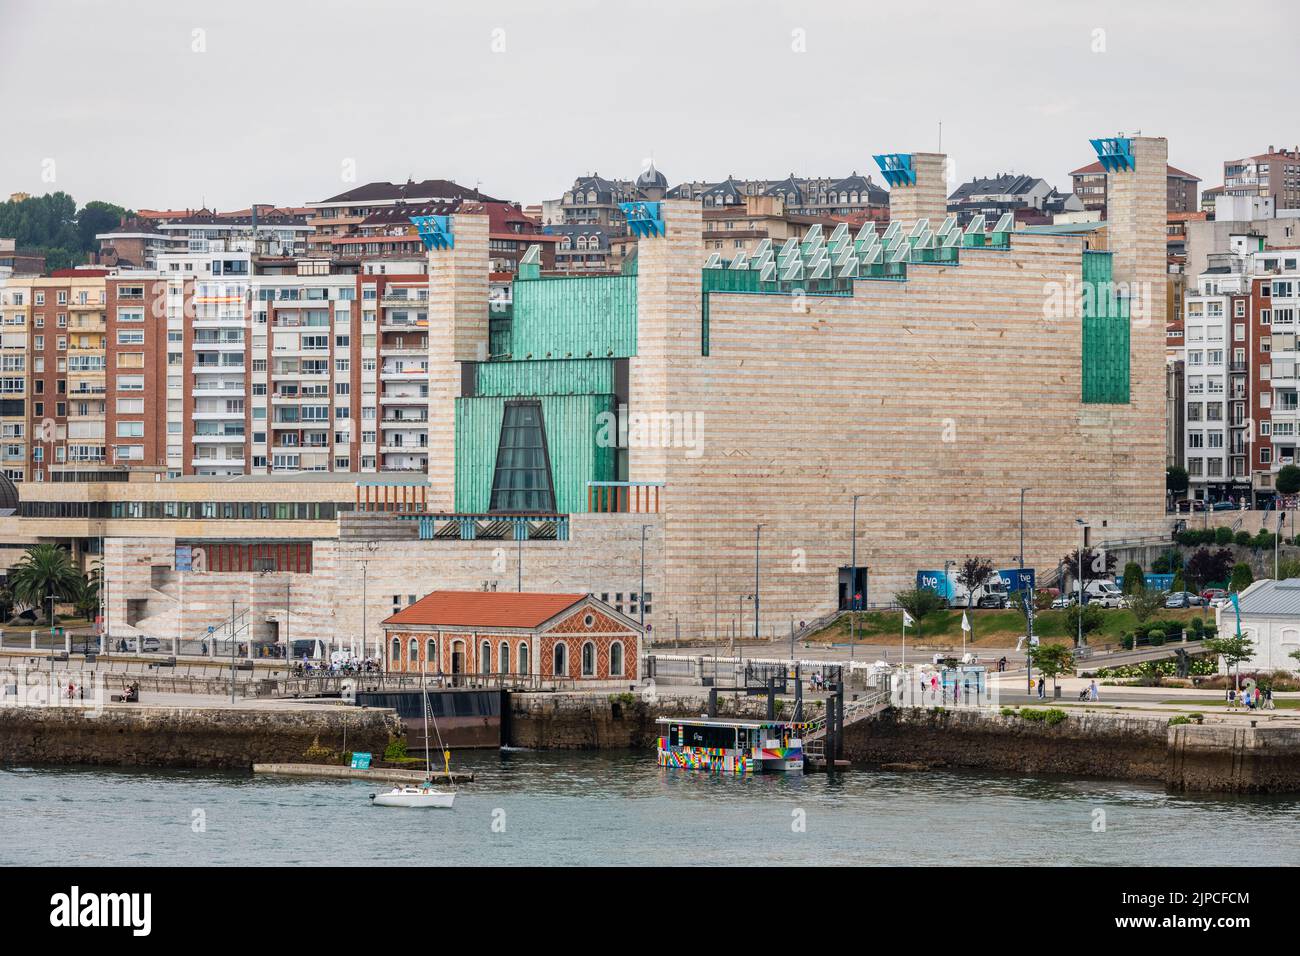 Le Palacio de Festivales de Cantabria, ou PFC, à Santander, en Espagne, un centre de théâtre et d'arts s'est achevé en 1991. Il accueille le Festival Internacional de Santander, l'un des plus anciens festivals de musique d'Espagne. Il a été conçu par l'architecte Francisco Javier Sáenz de Oiza Banque D'Images